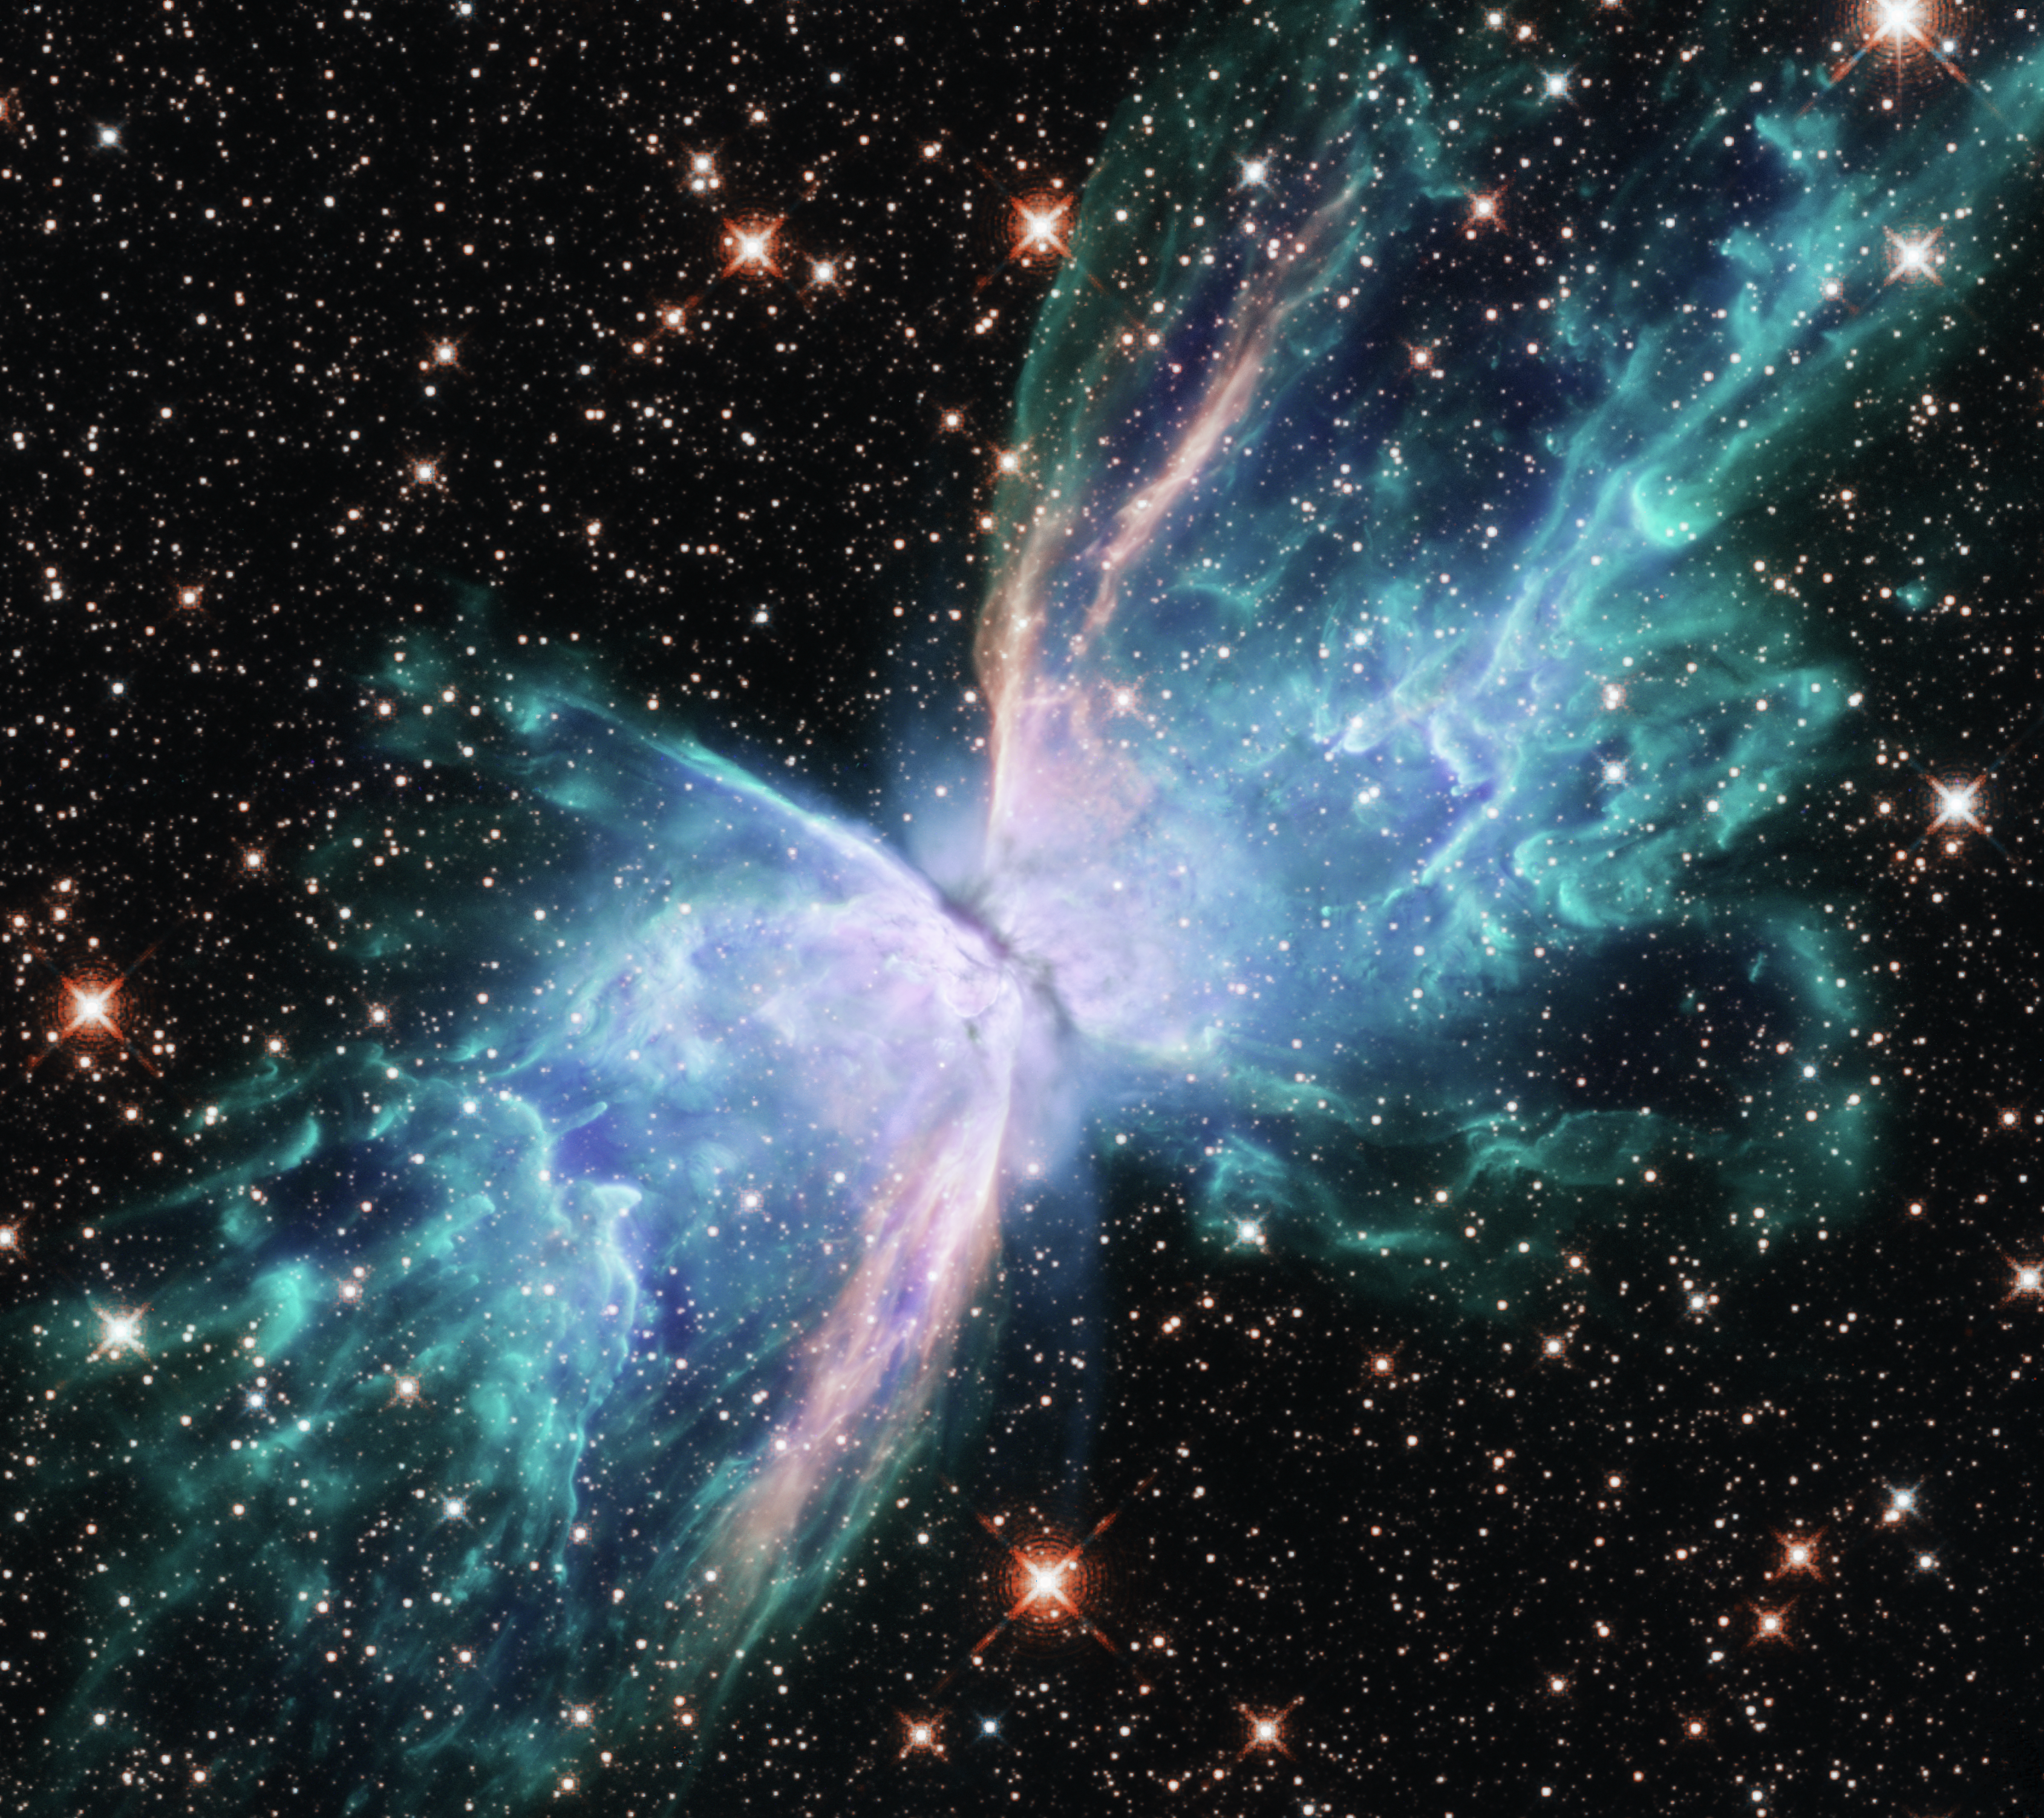 NGC 6302: The Butterfly Nebula